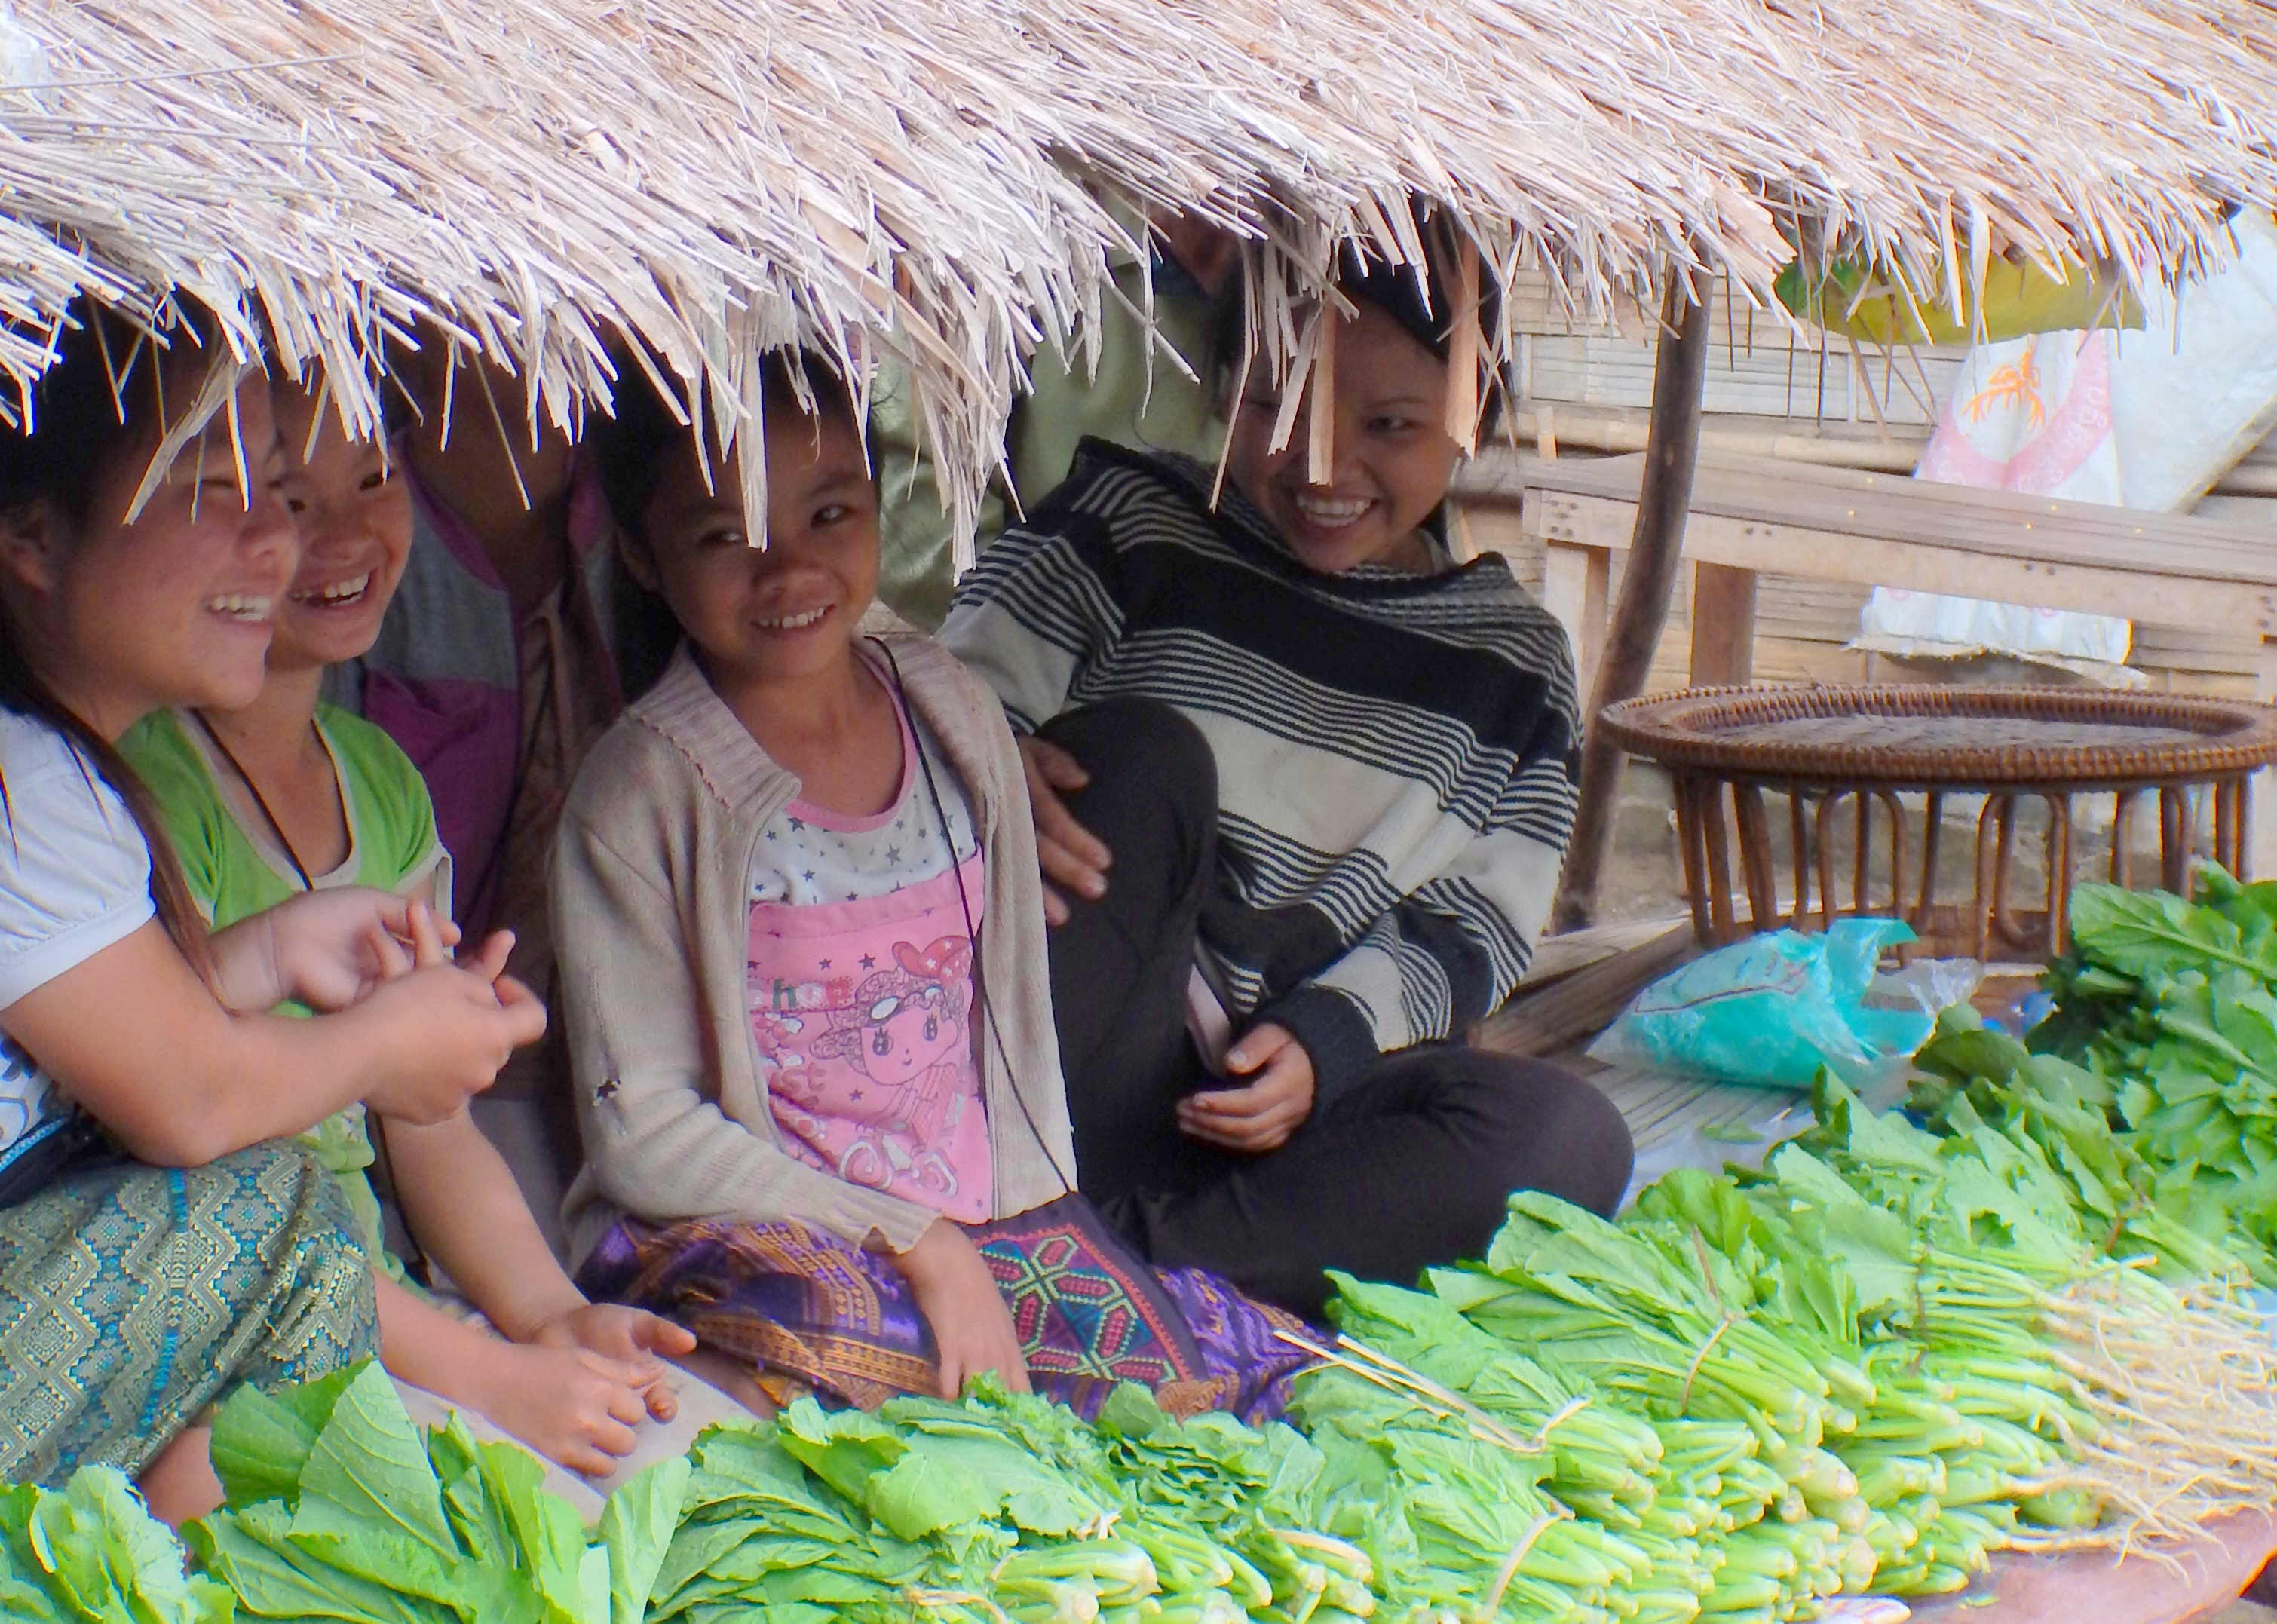 Girls selling vegetables, Luang Prabang, Laos